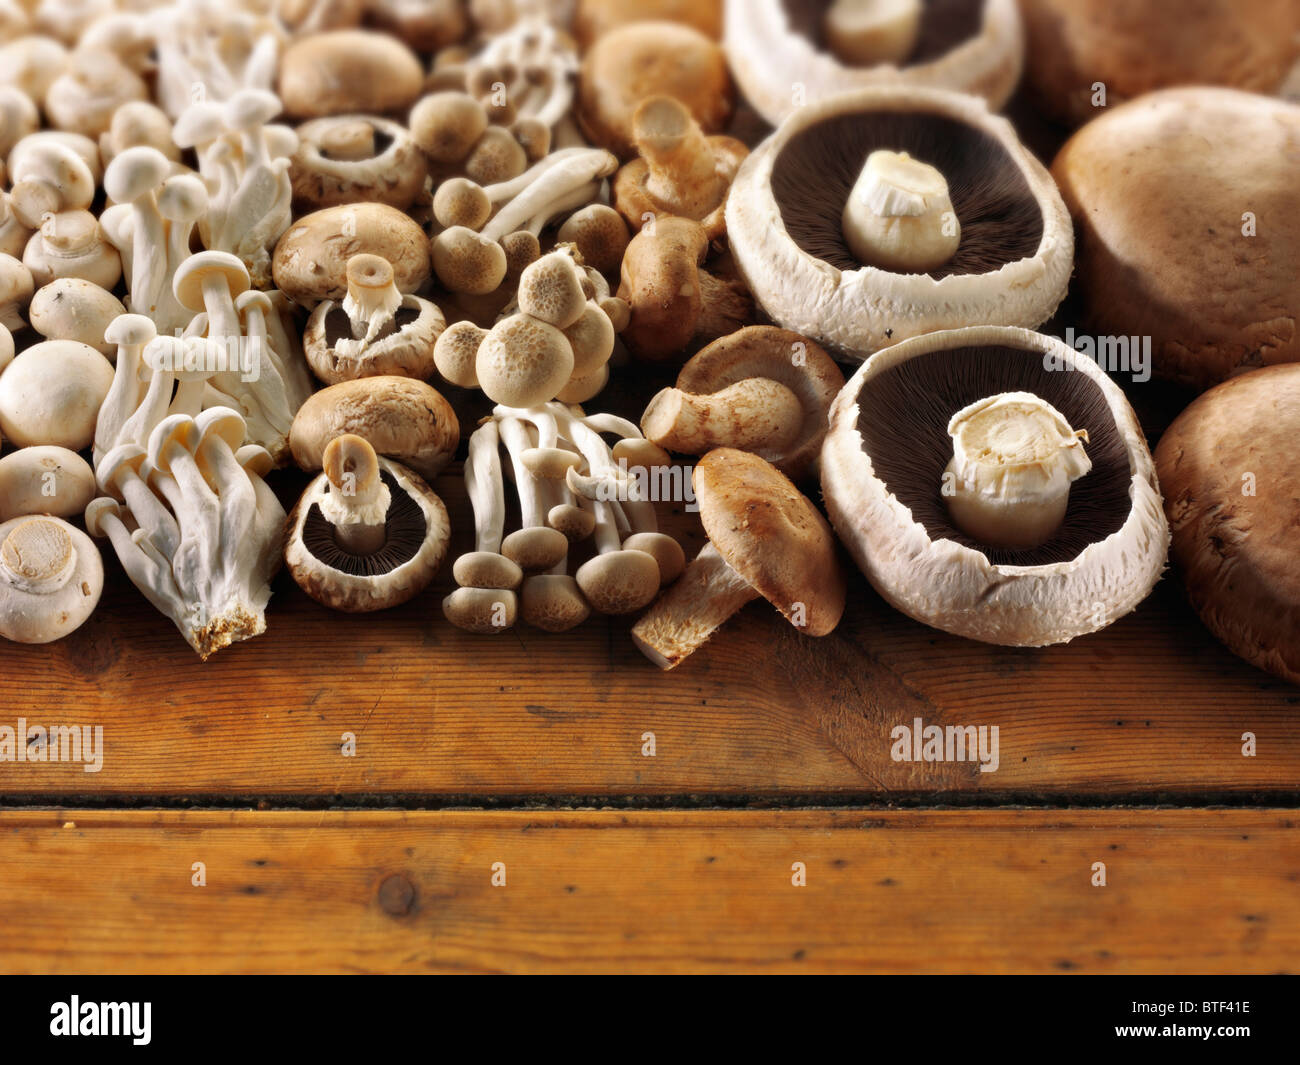 Champignons frais, crus et entiers cultivés, disposés sur un cadre rustique table en bois Banque D'Images